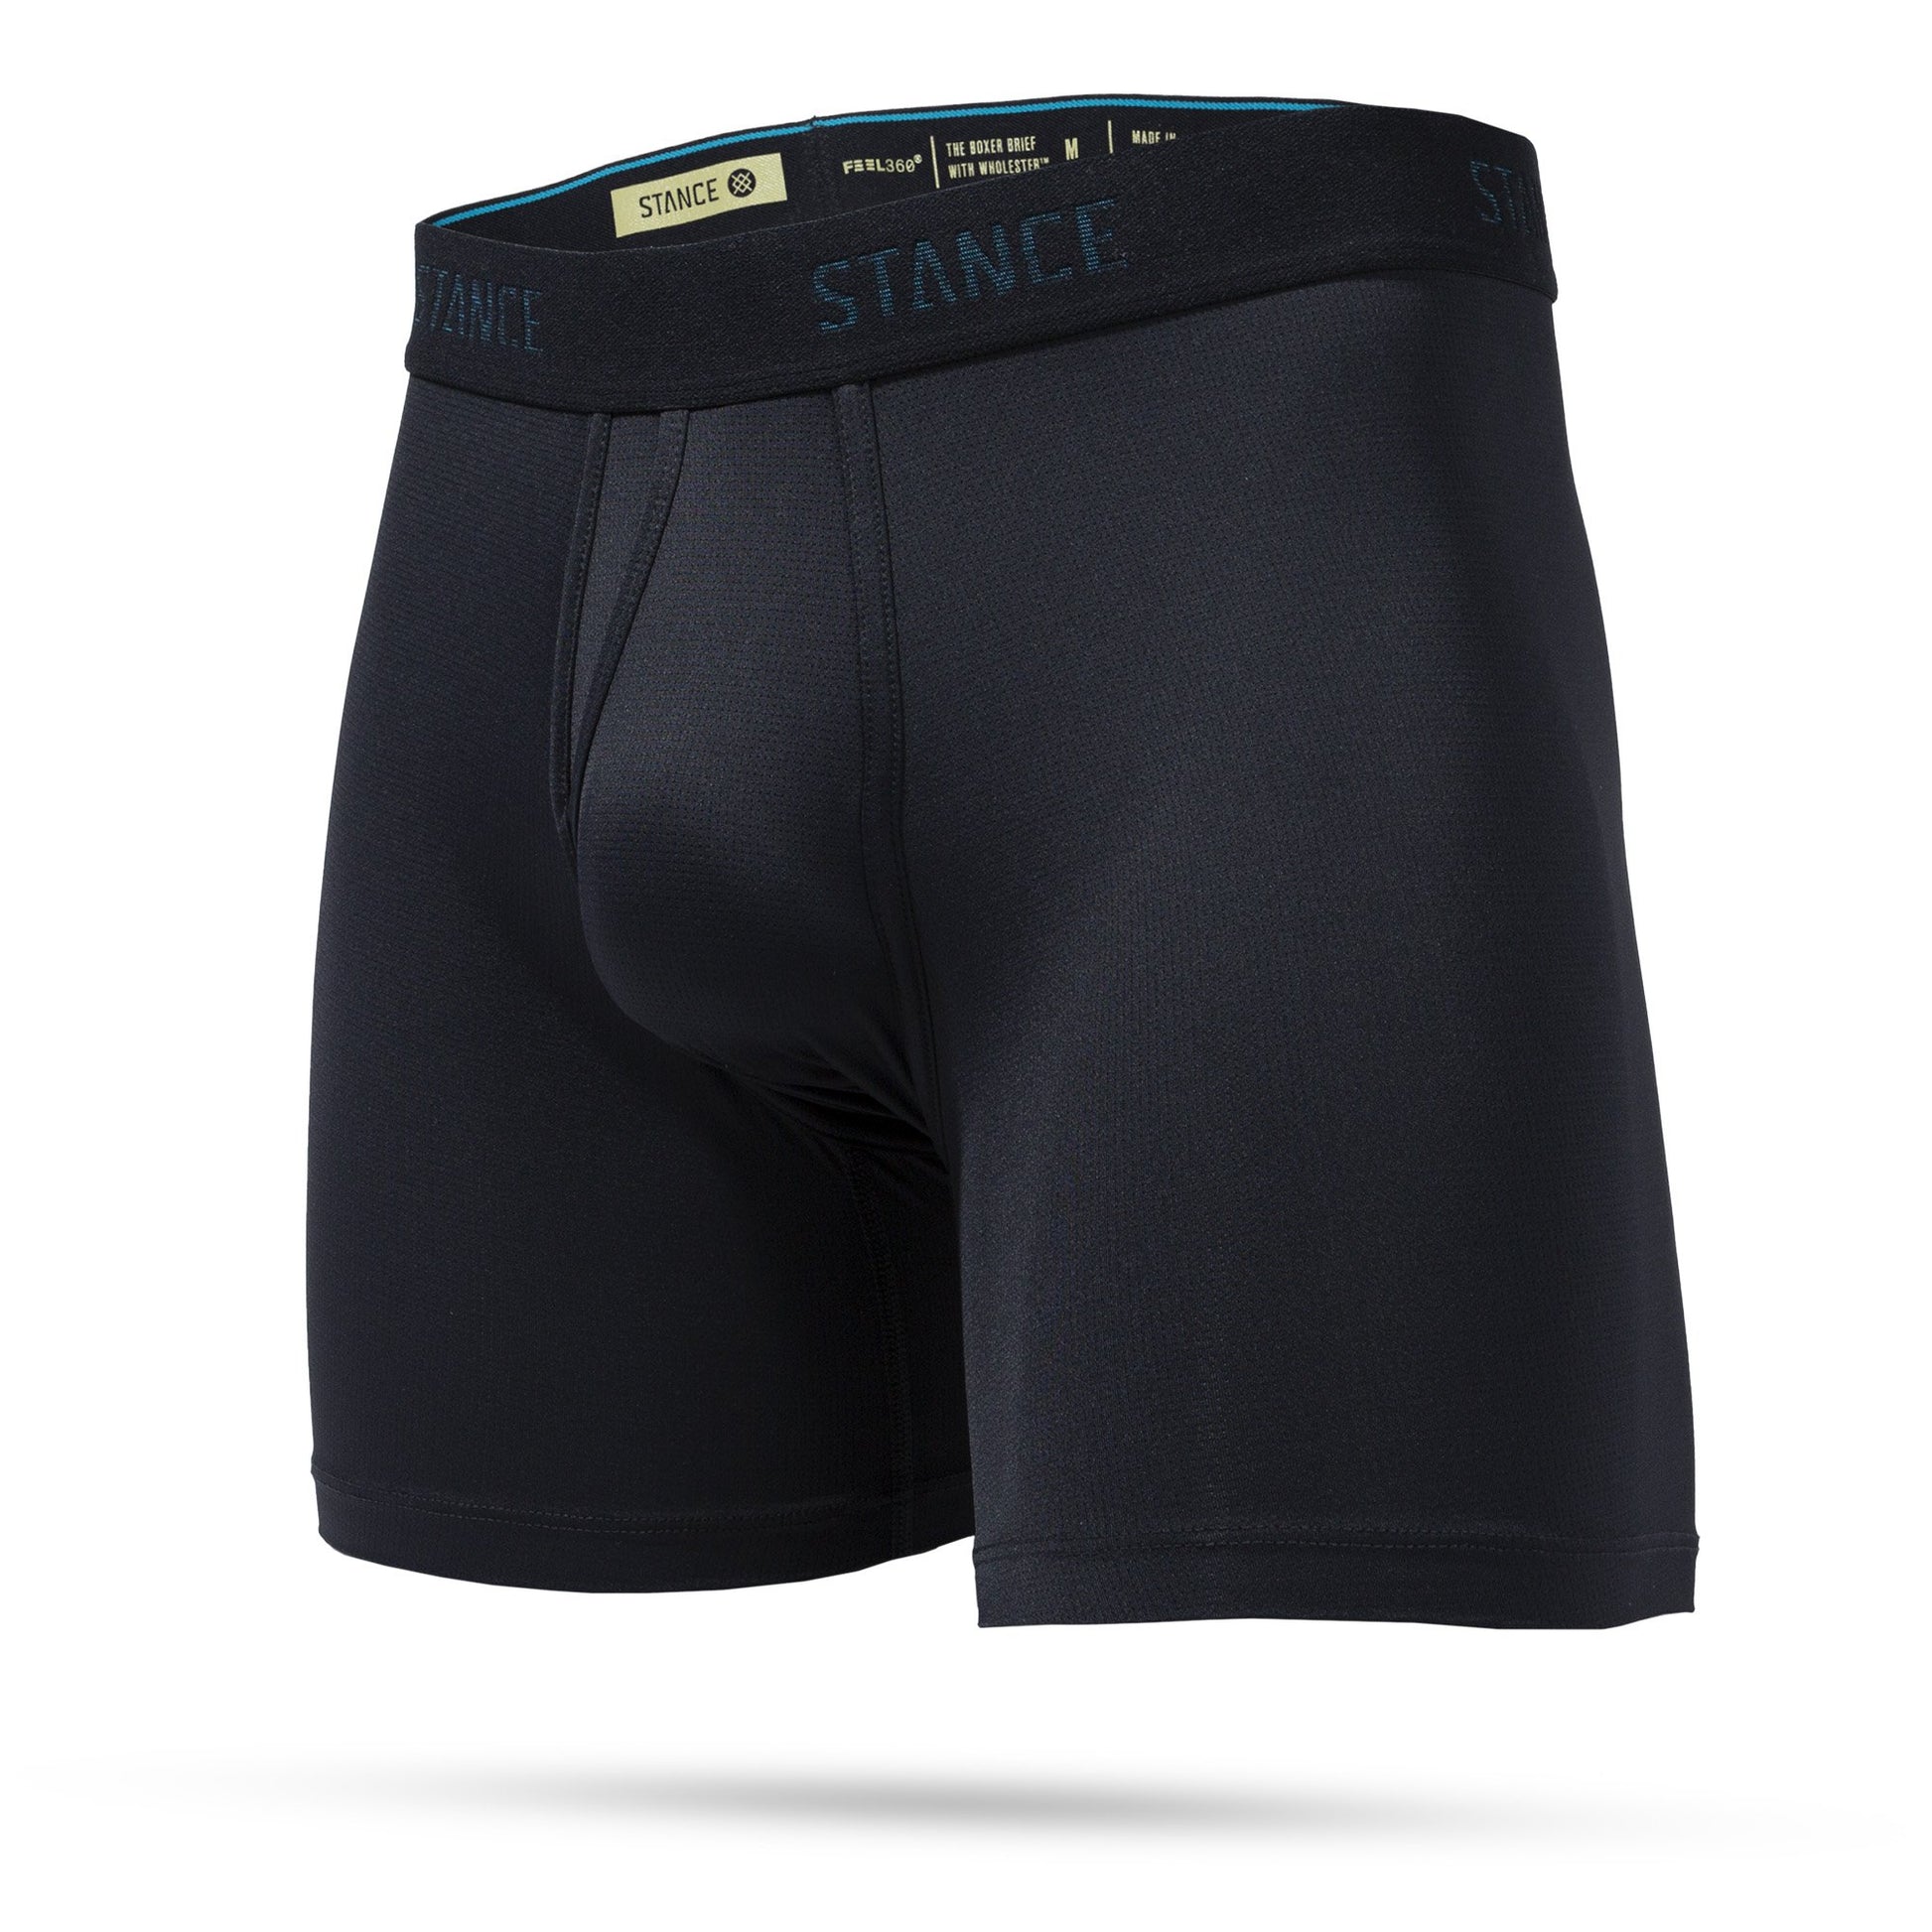 Stance Men's Pascals Cotton Boxer Briefs, Men's Underwear